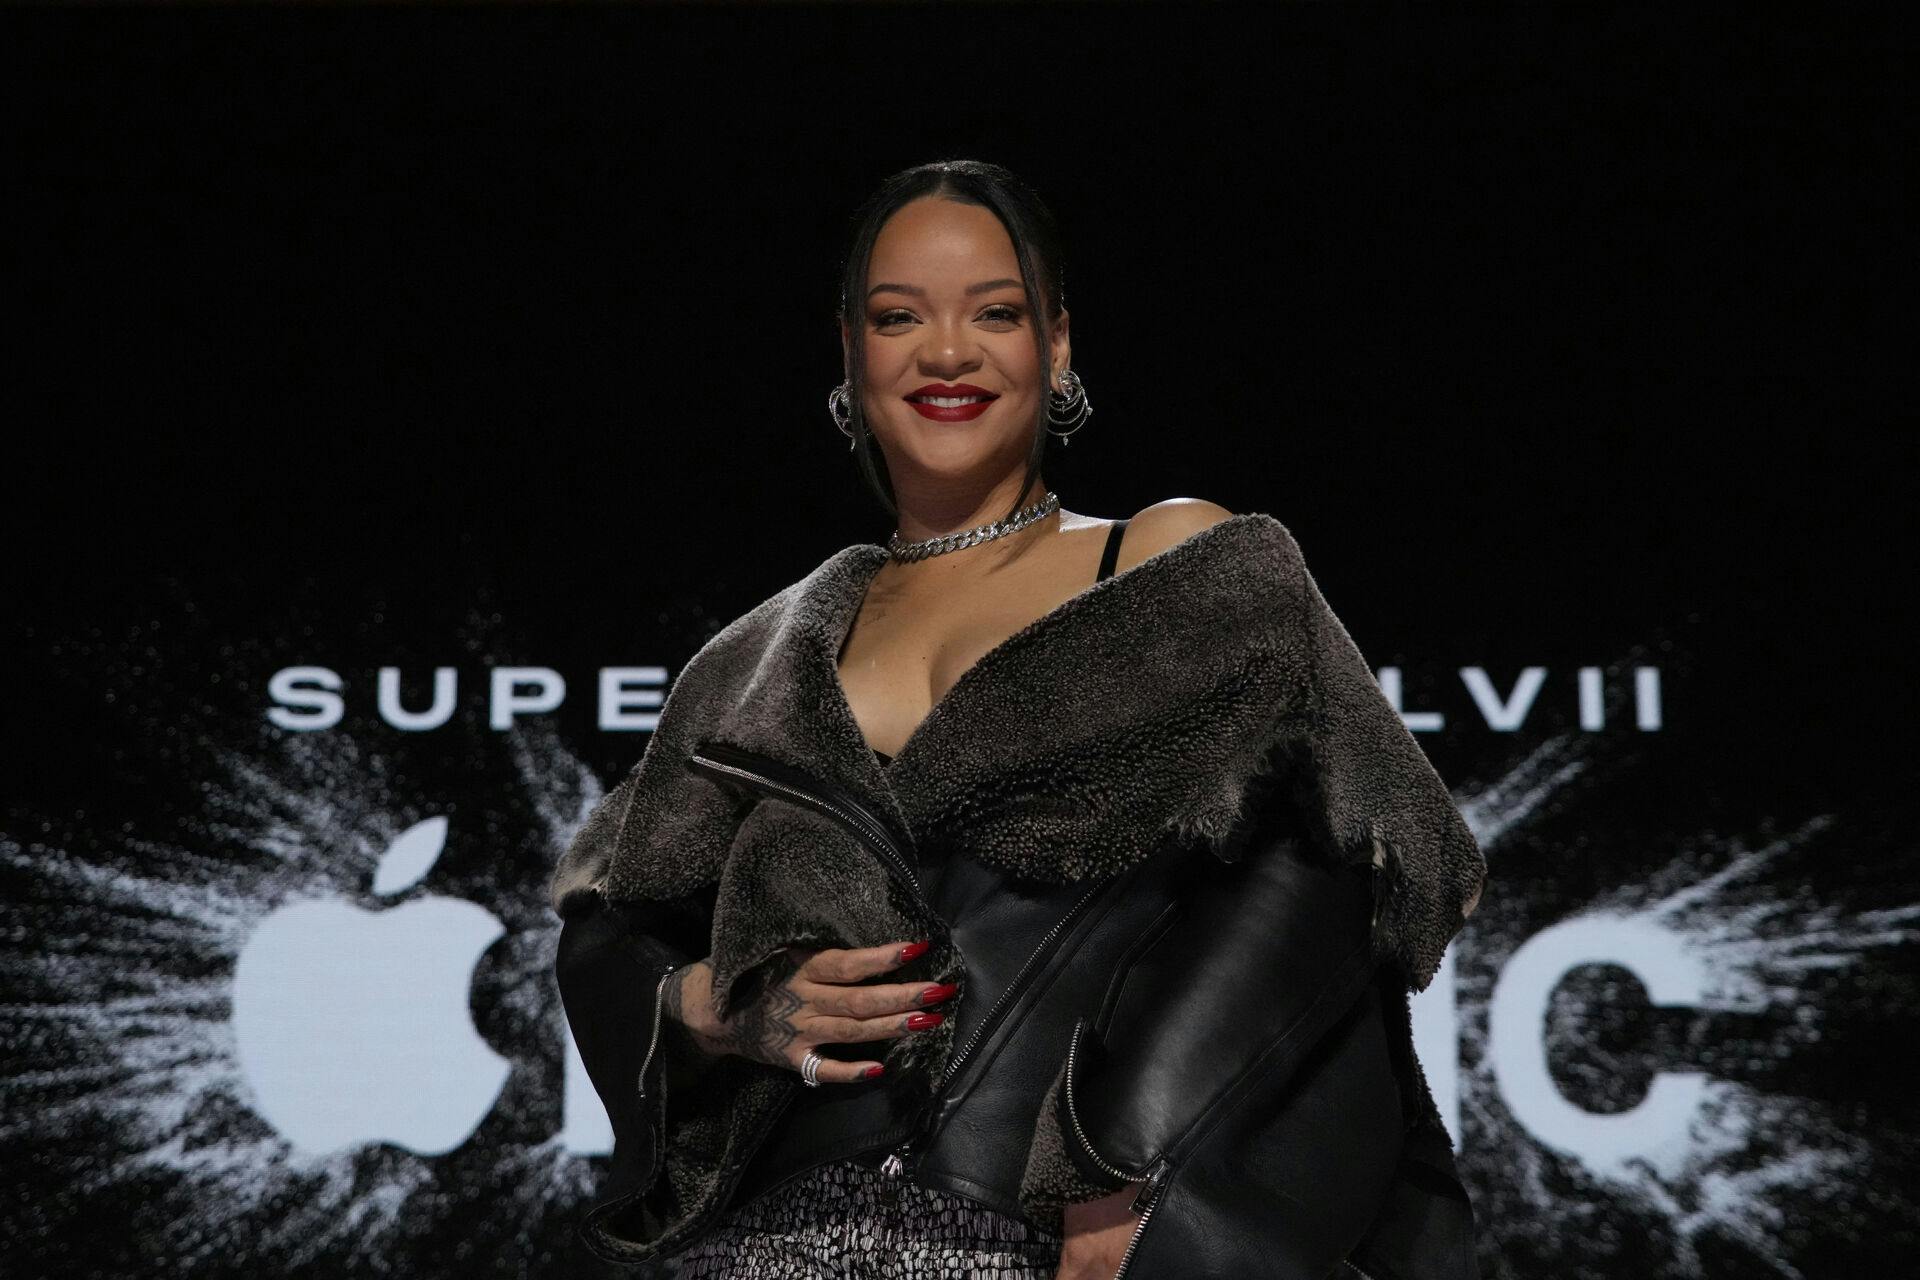 Over 100 millioner seere plejer at se med, når Super Bowl Halftime-show bliver vist. I nat er det Rihanna, der har fået æren af at optræde.